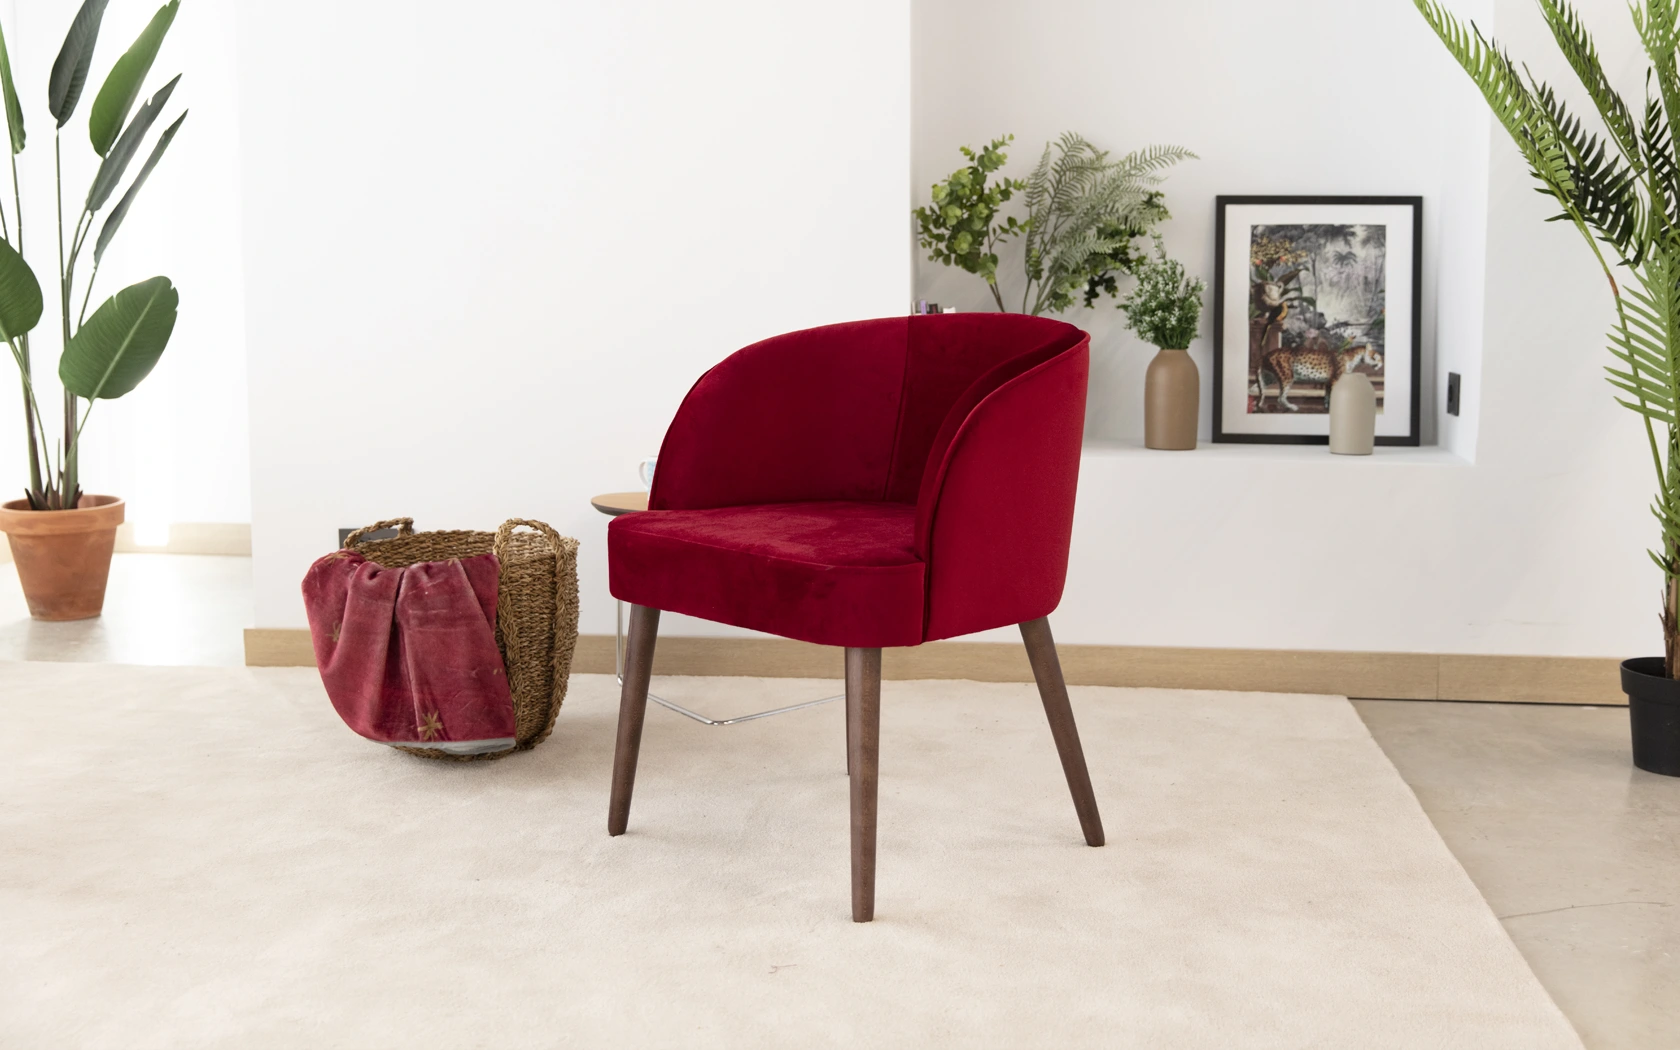 Draco silla comedor moderna tapizada